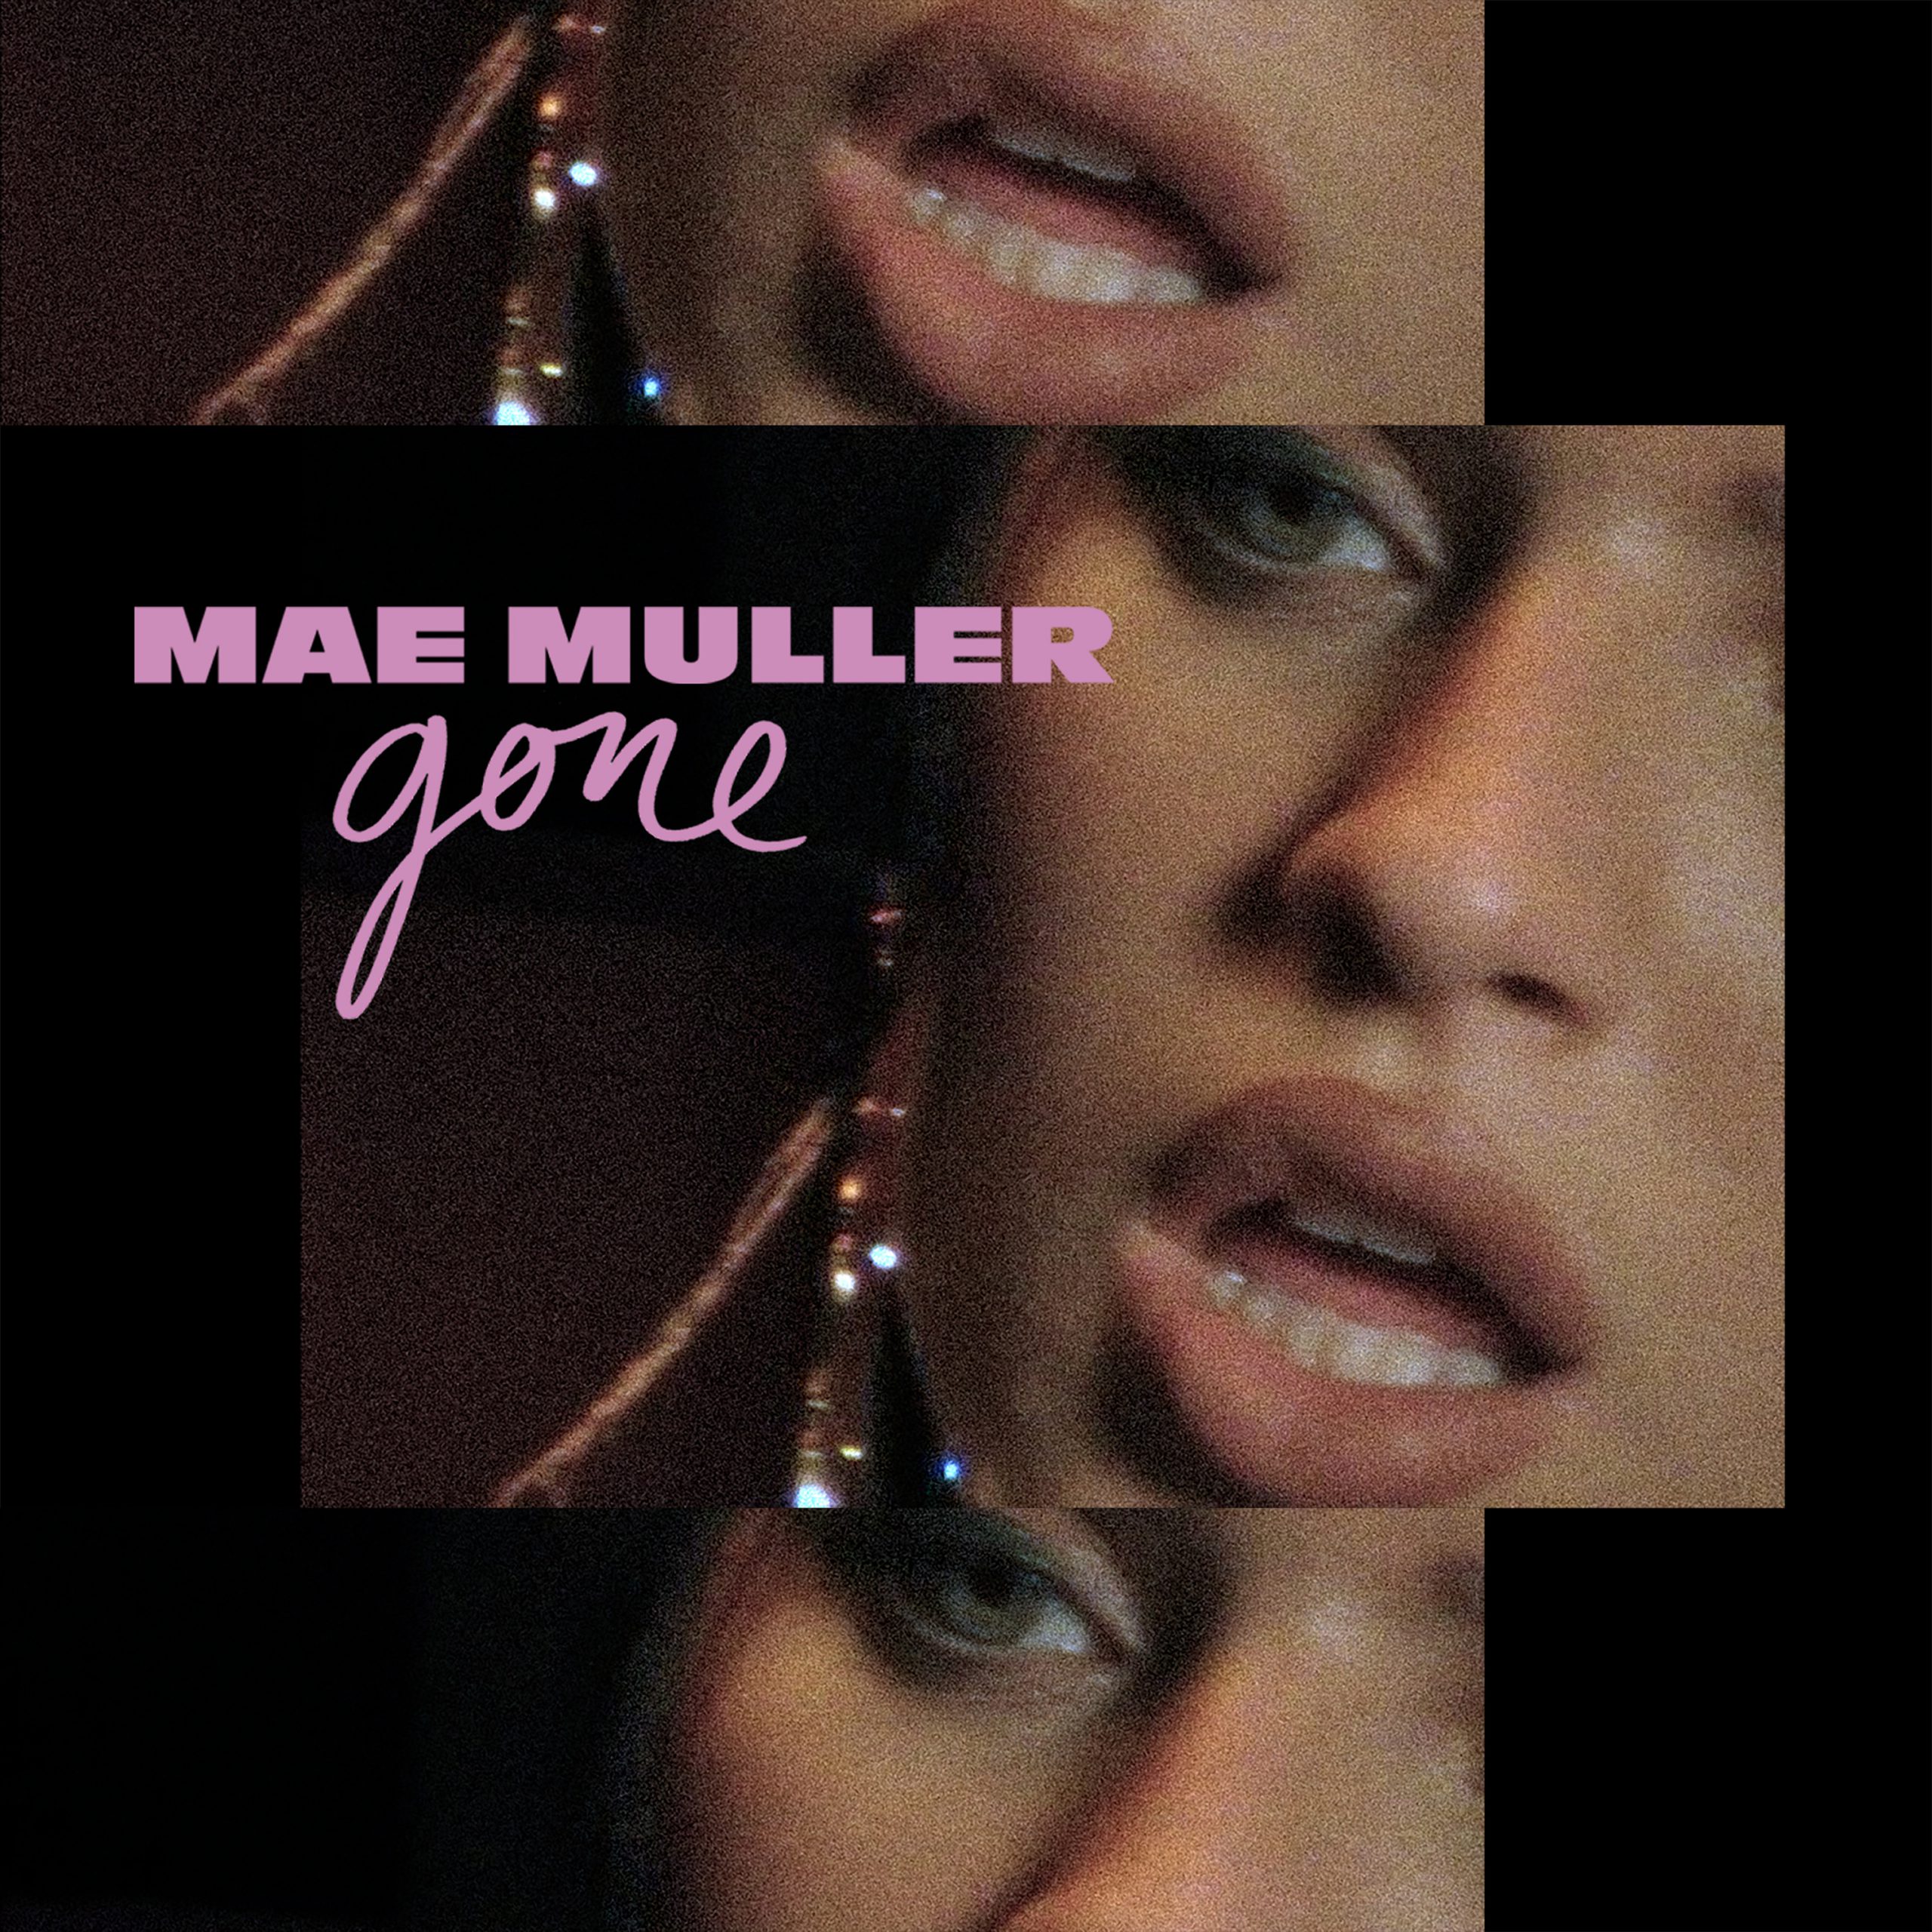 Mae Muller - Gone